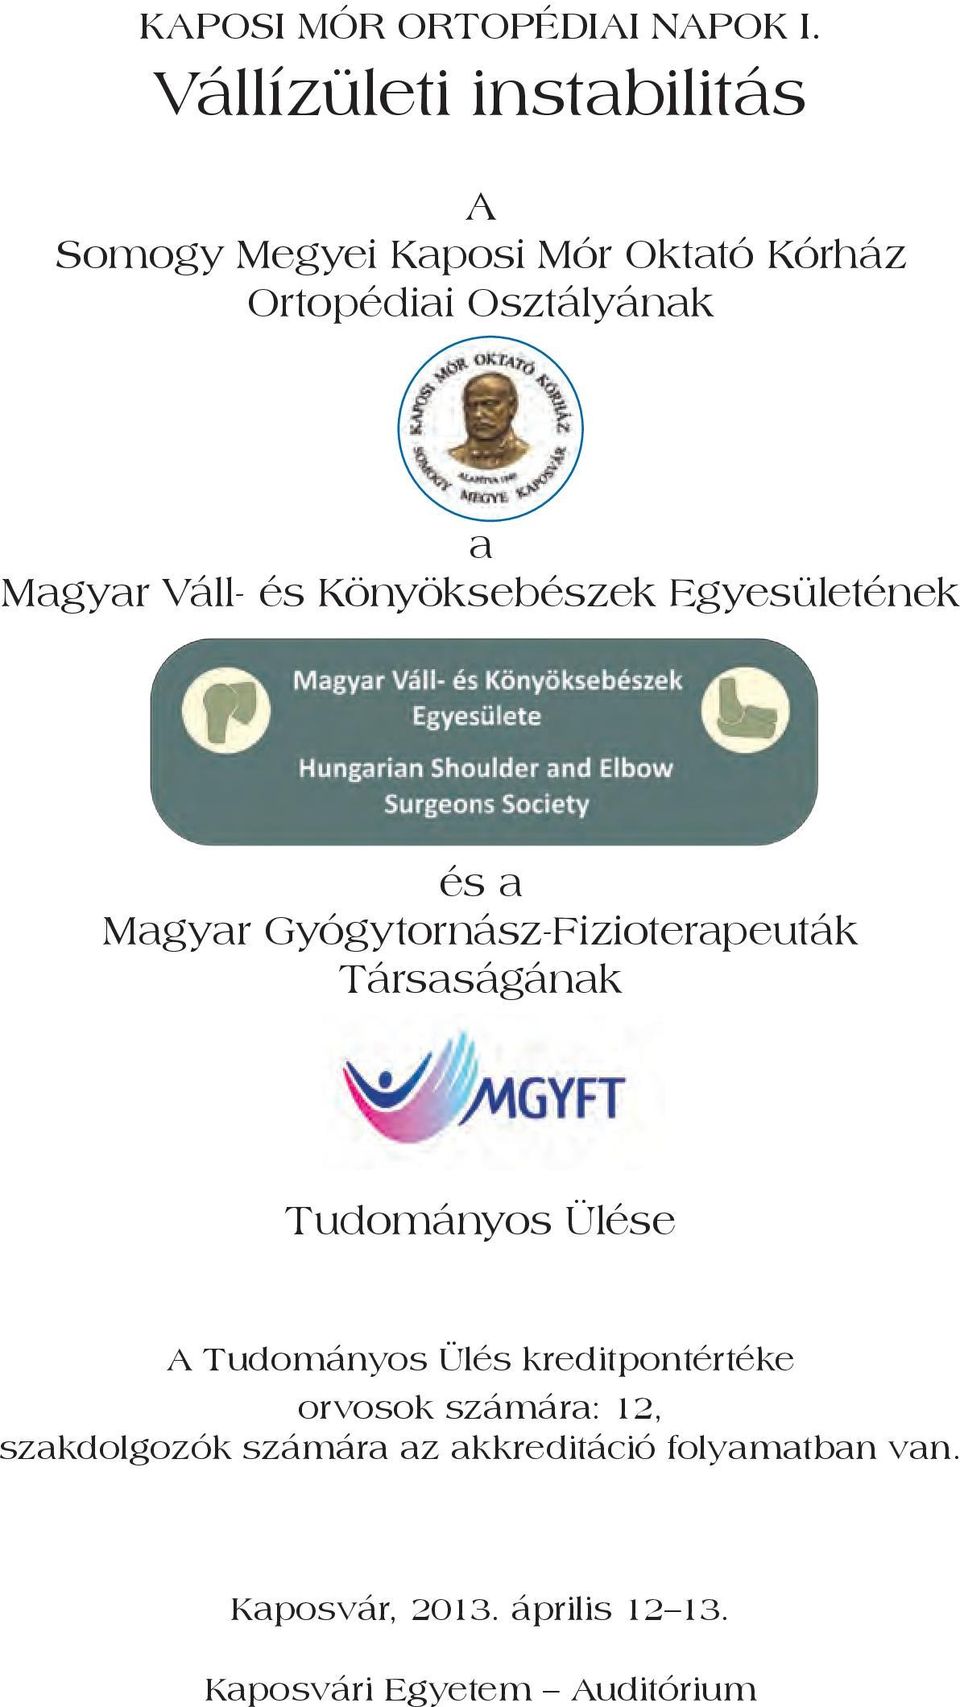 Váll- és Könyöksebészek Egyesületének és a Magyar Gyógytornász-Fizioterapeuták Társaságának